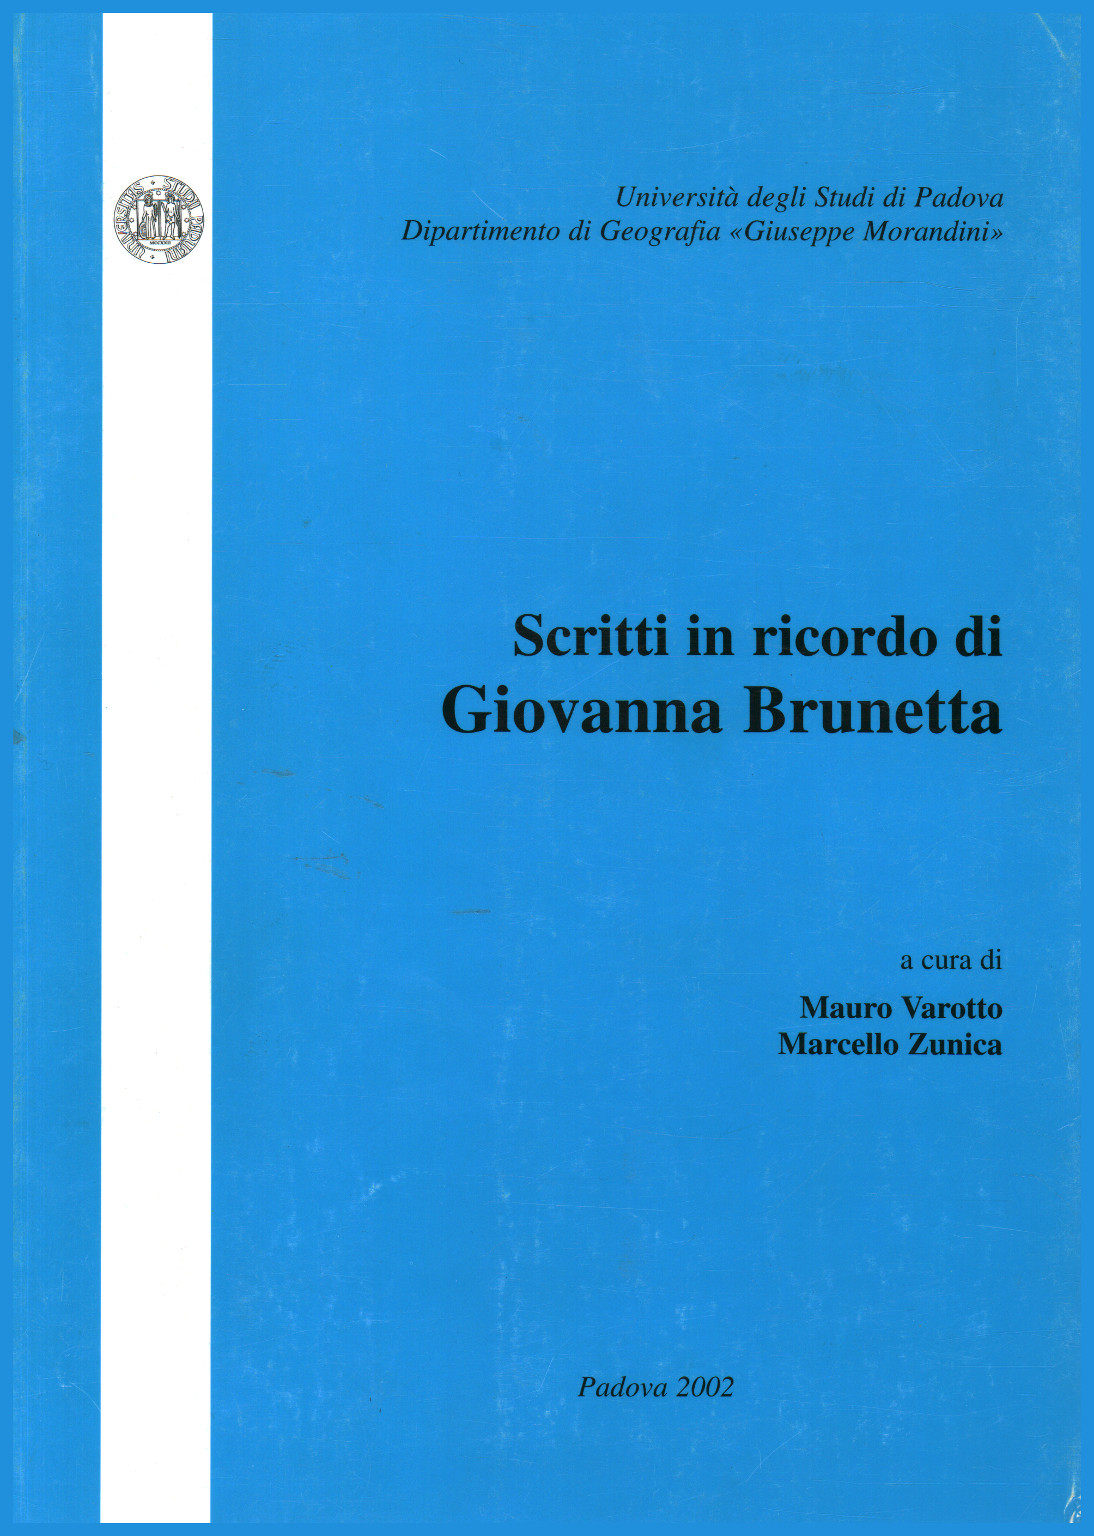 Written in memory of Giovanna Brunetta, Mauro Varotto Marcello Zunica